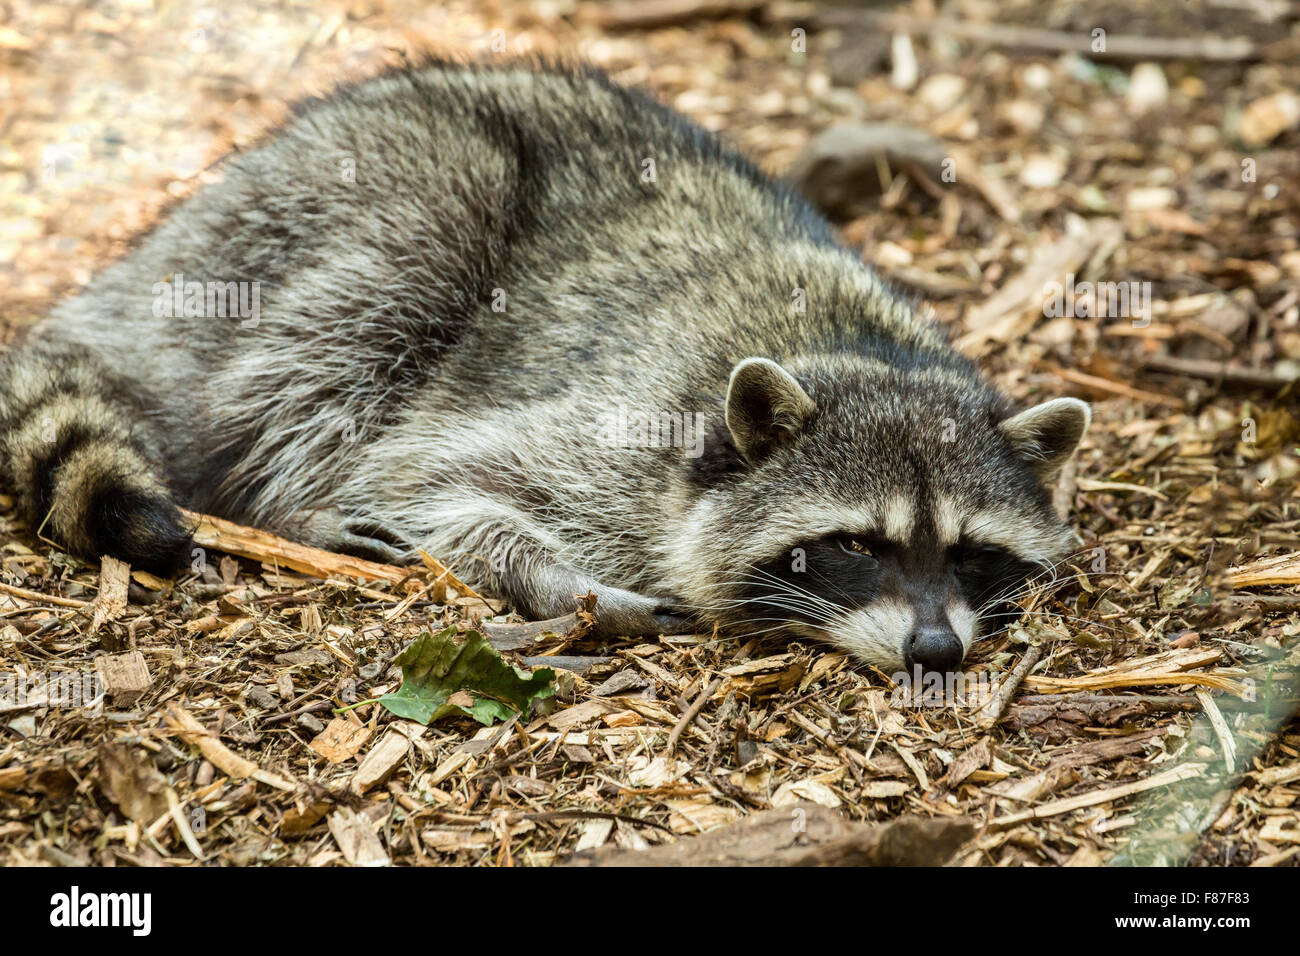 Sleepy Northern Raccoon at Northwest Trek Wildlife Park near Eatonville, Washington, USA Stock Photo